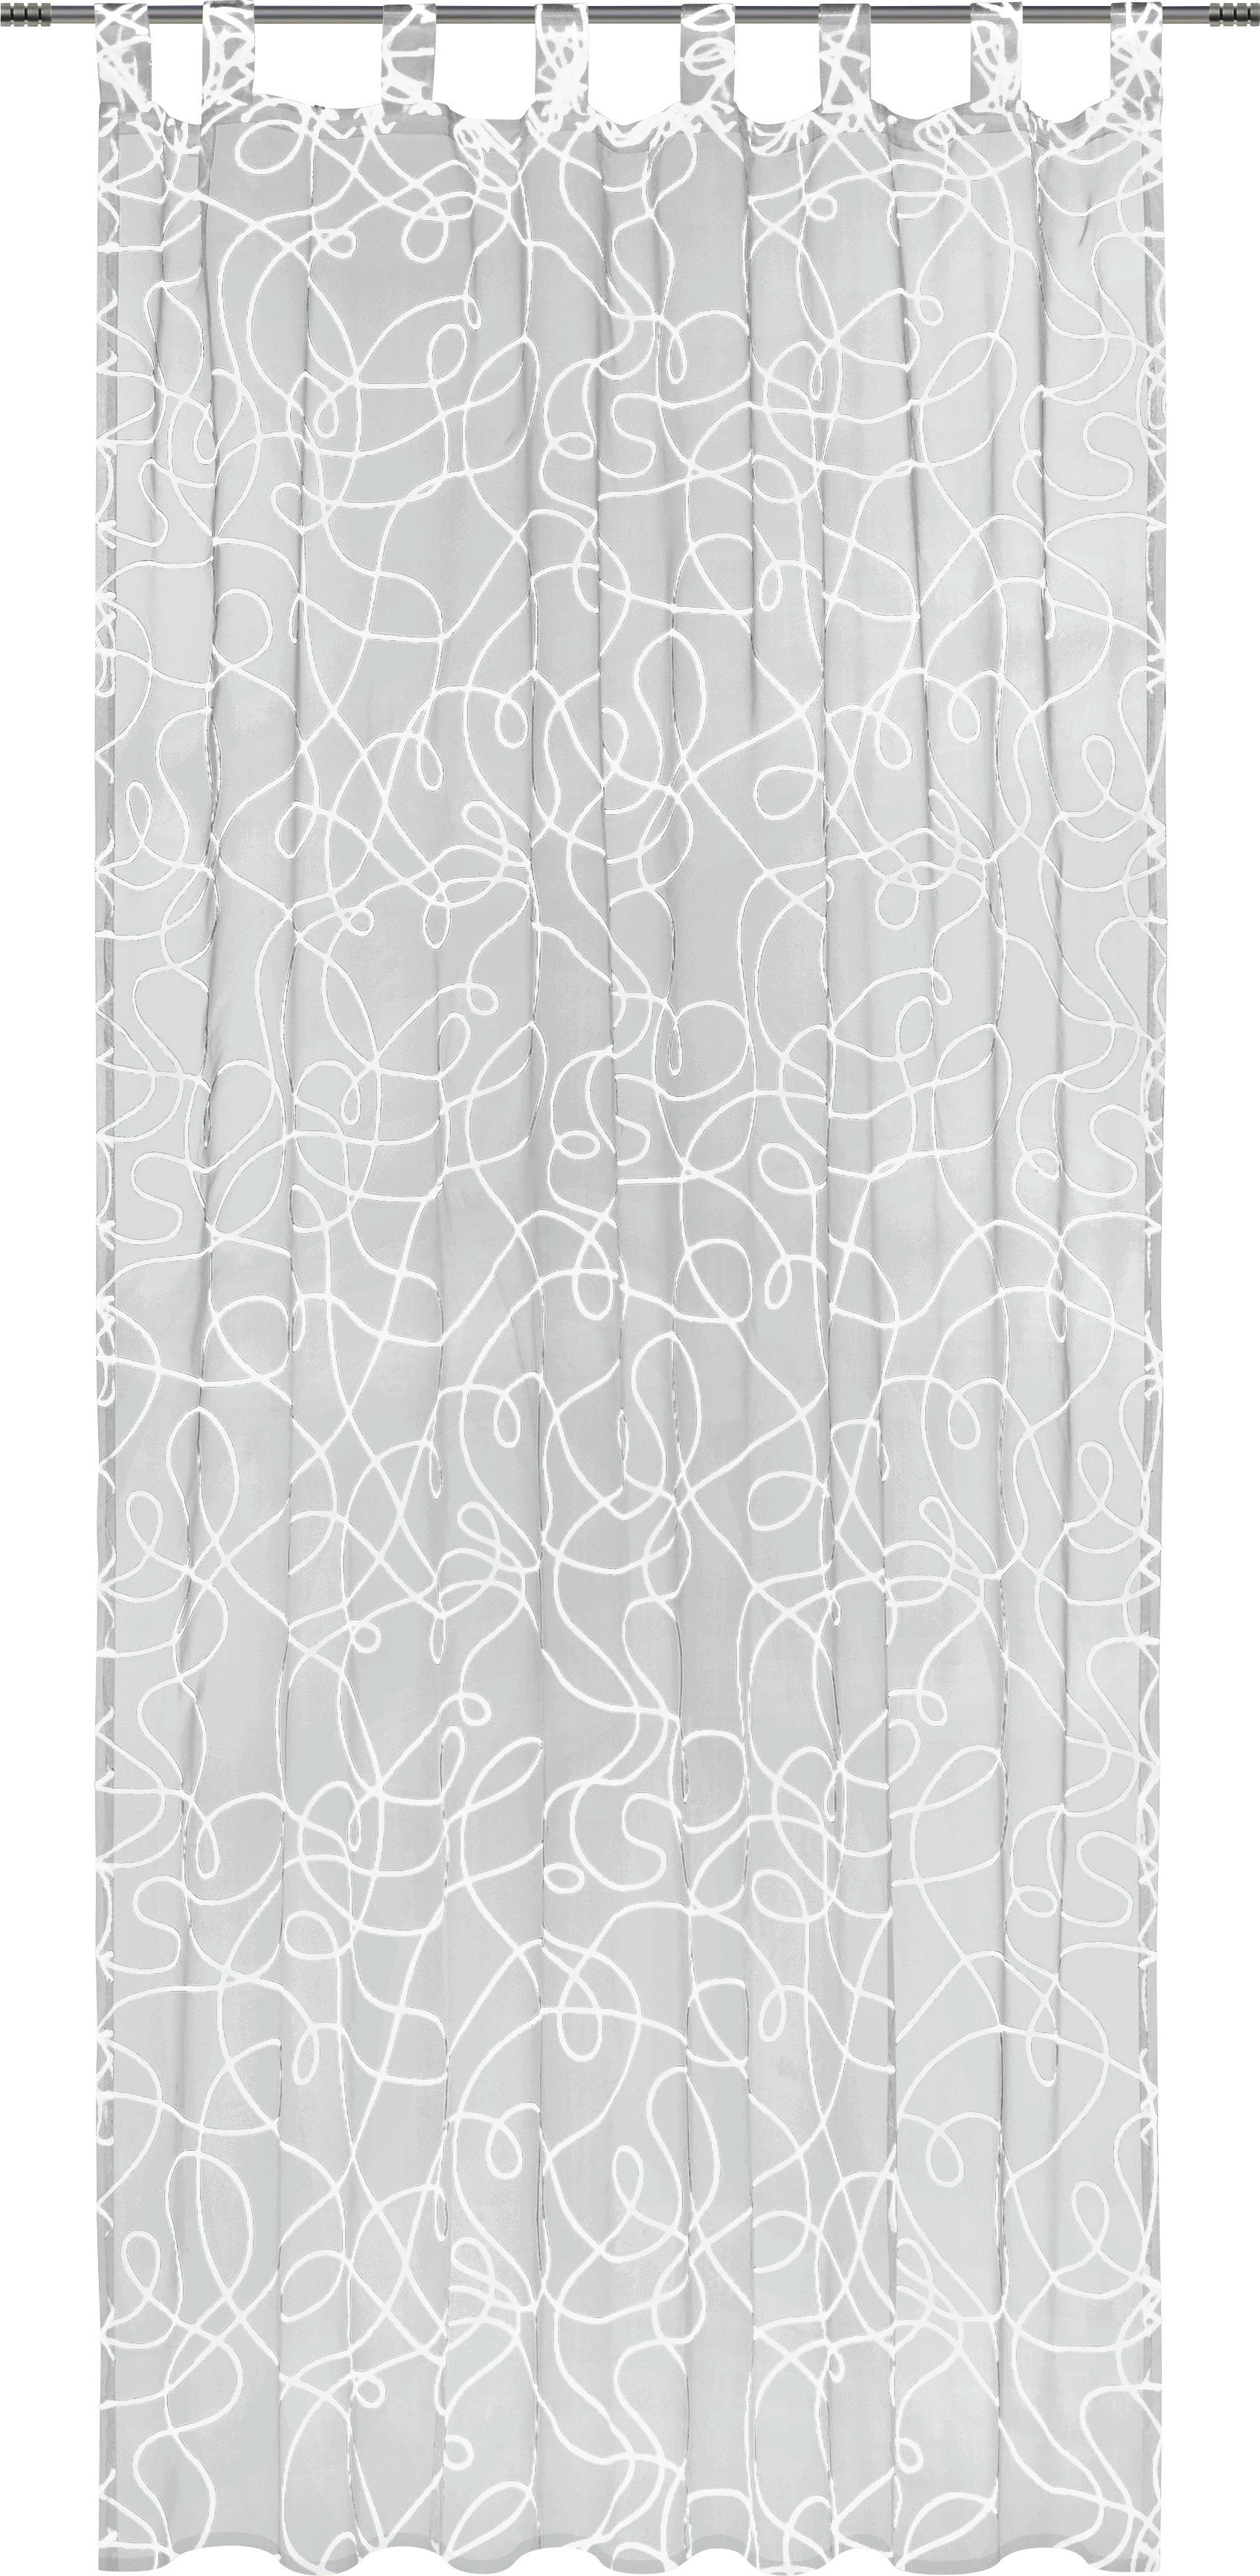 SCHLAUFENVORHANG transparent  - weiss, Konventionell, Textil (140/245cm) - Boxxx